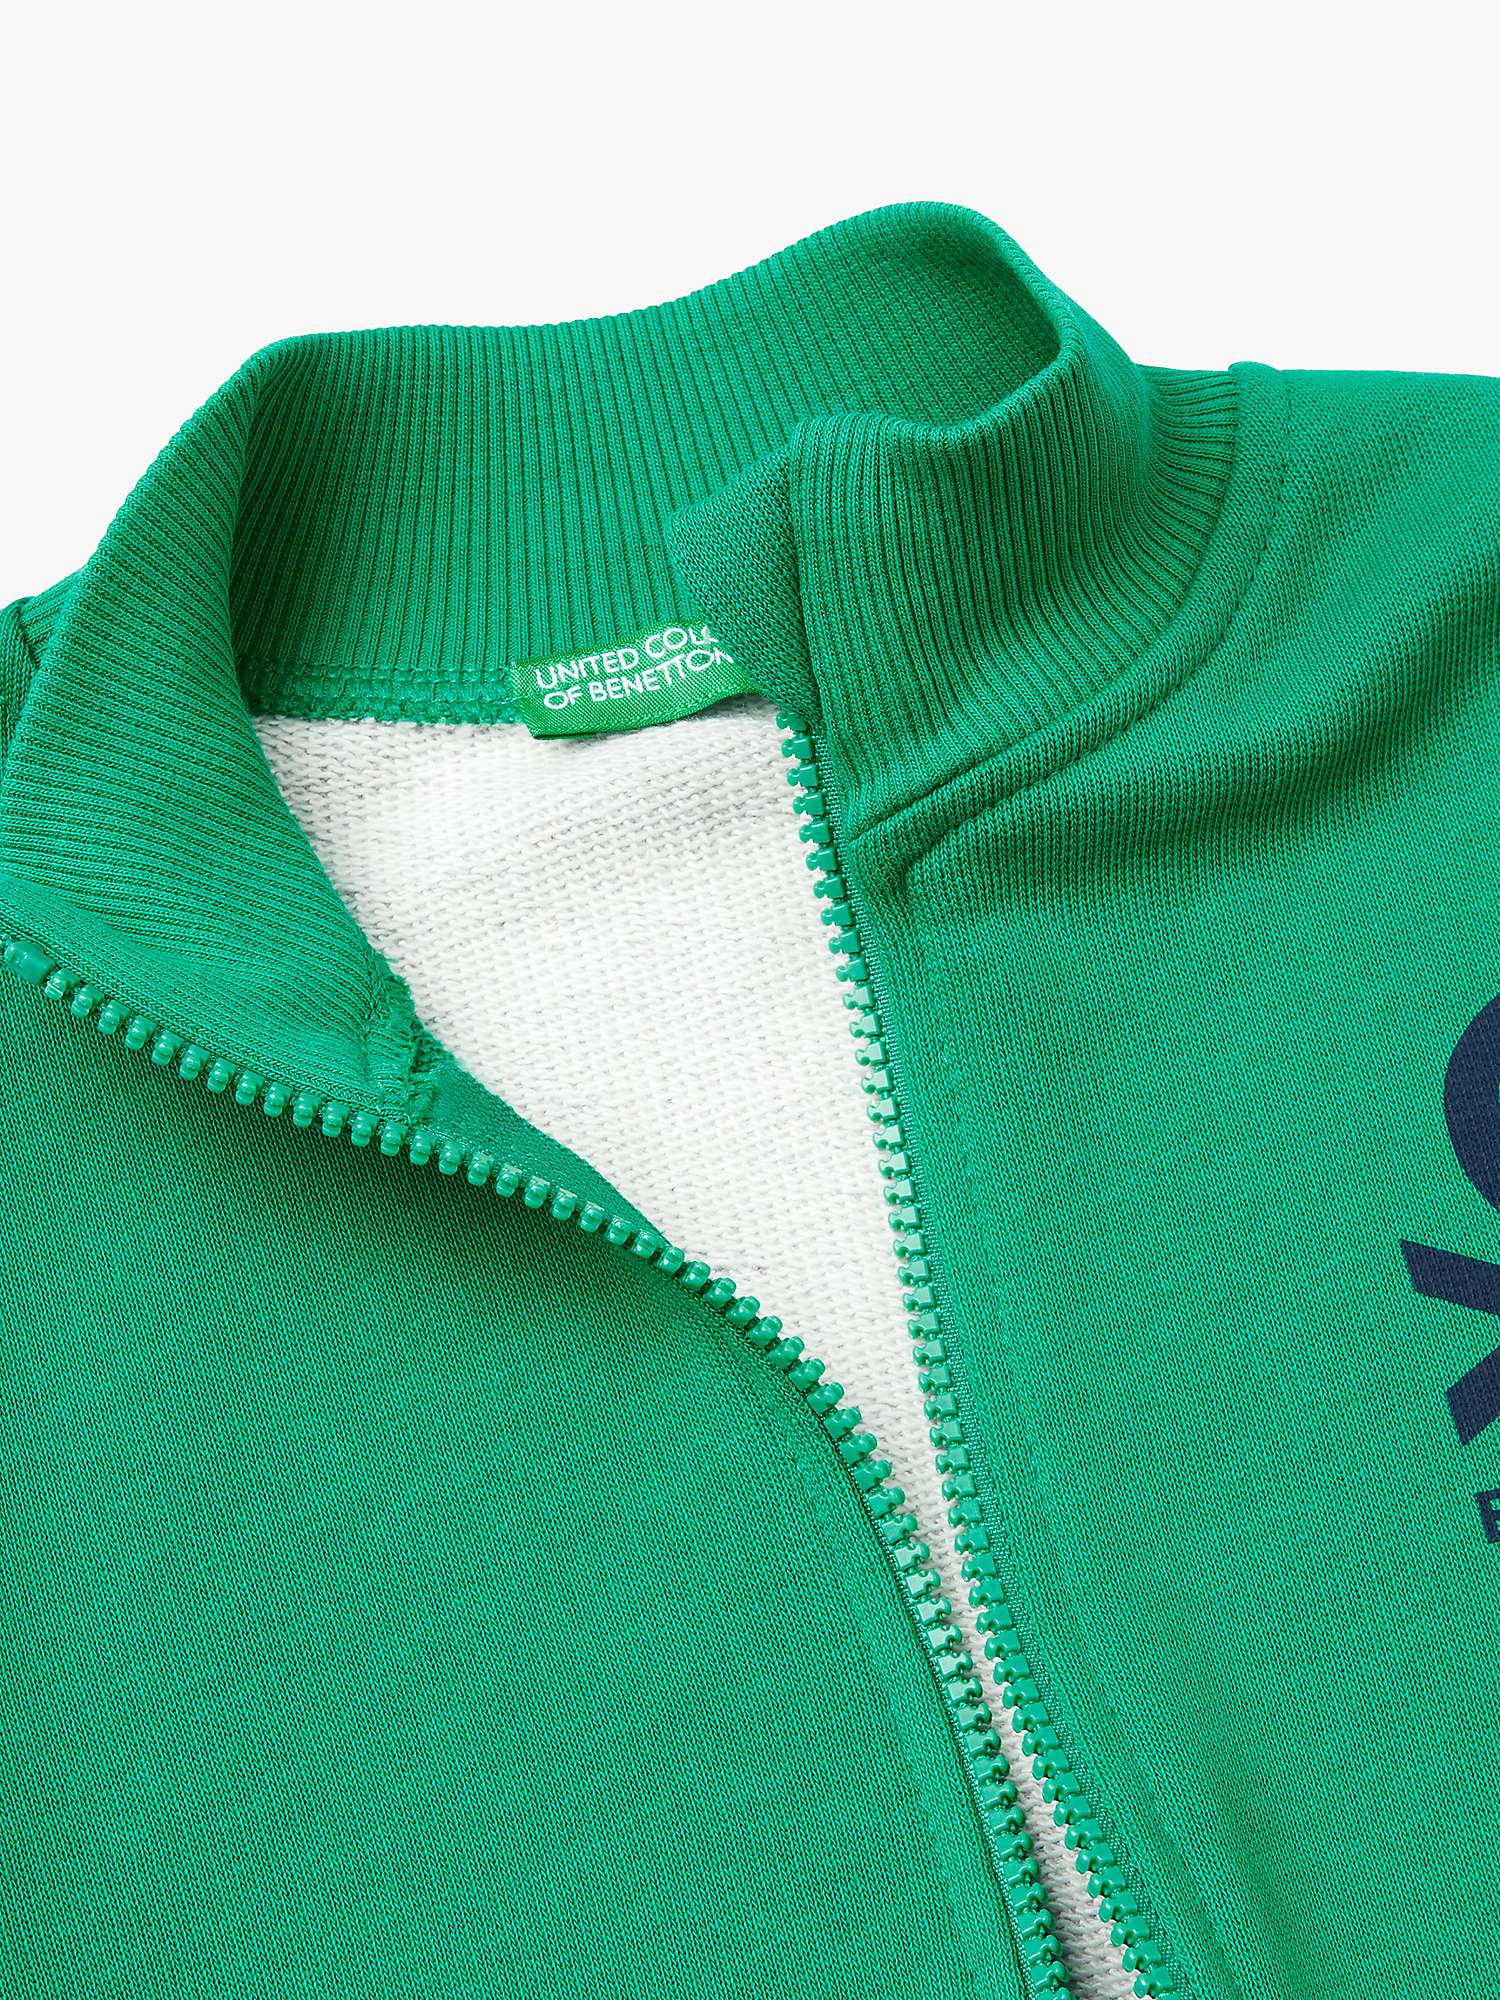 Buy Benetton Kids' Logo Two Tone Zip Through Sweatshirt, Green/Multi Online at johnlewis.com